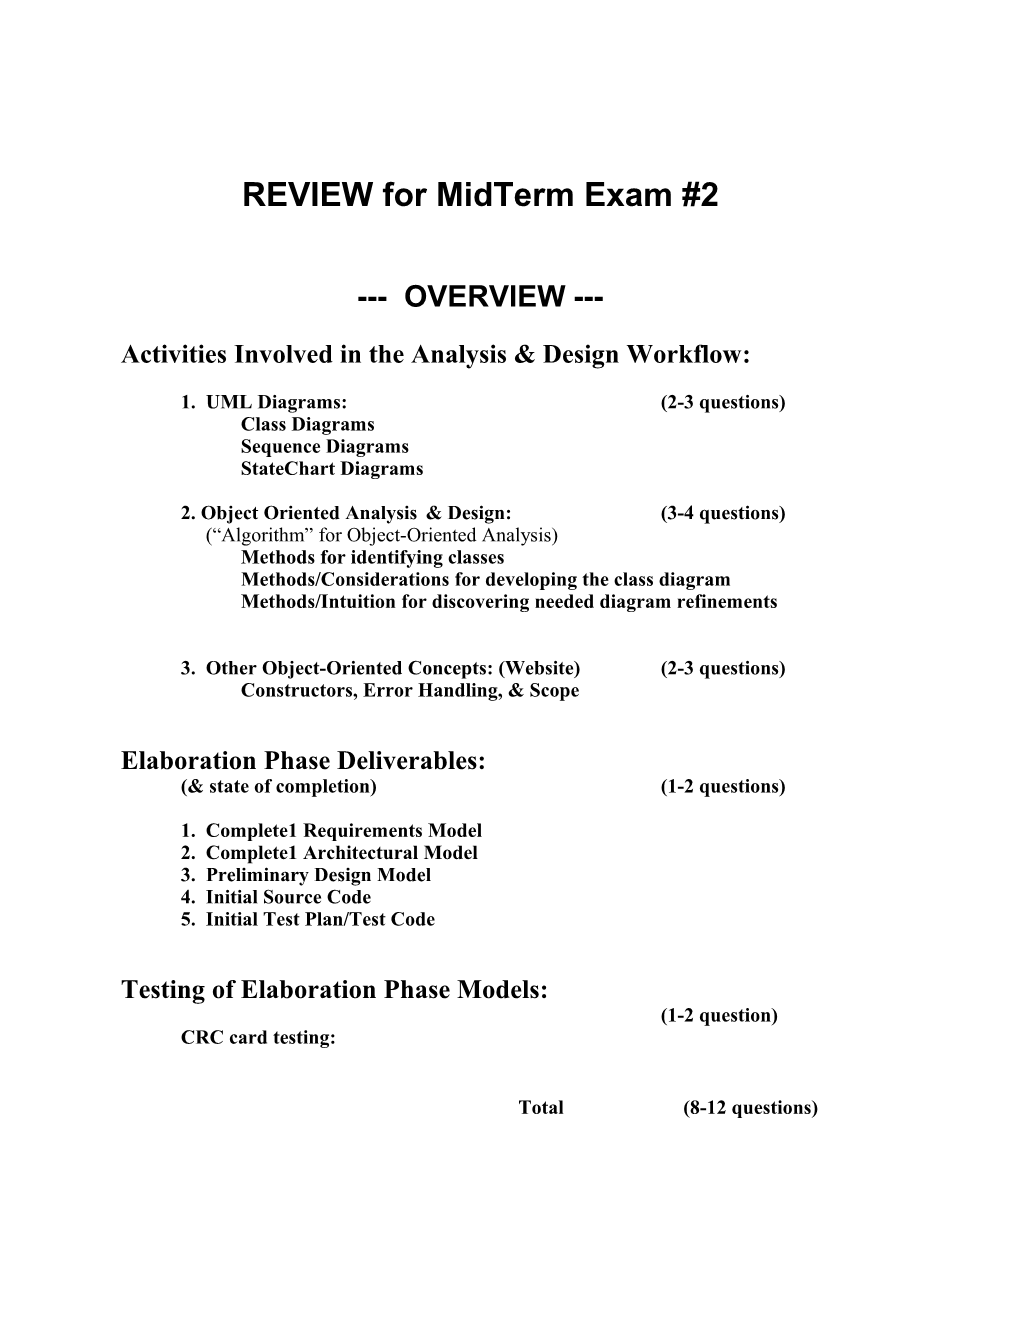 REVIEW for Midterm Exam #2